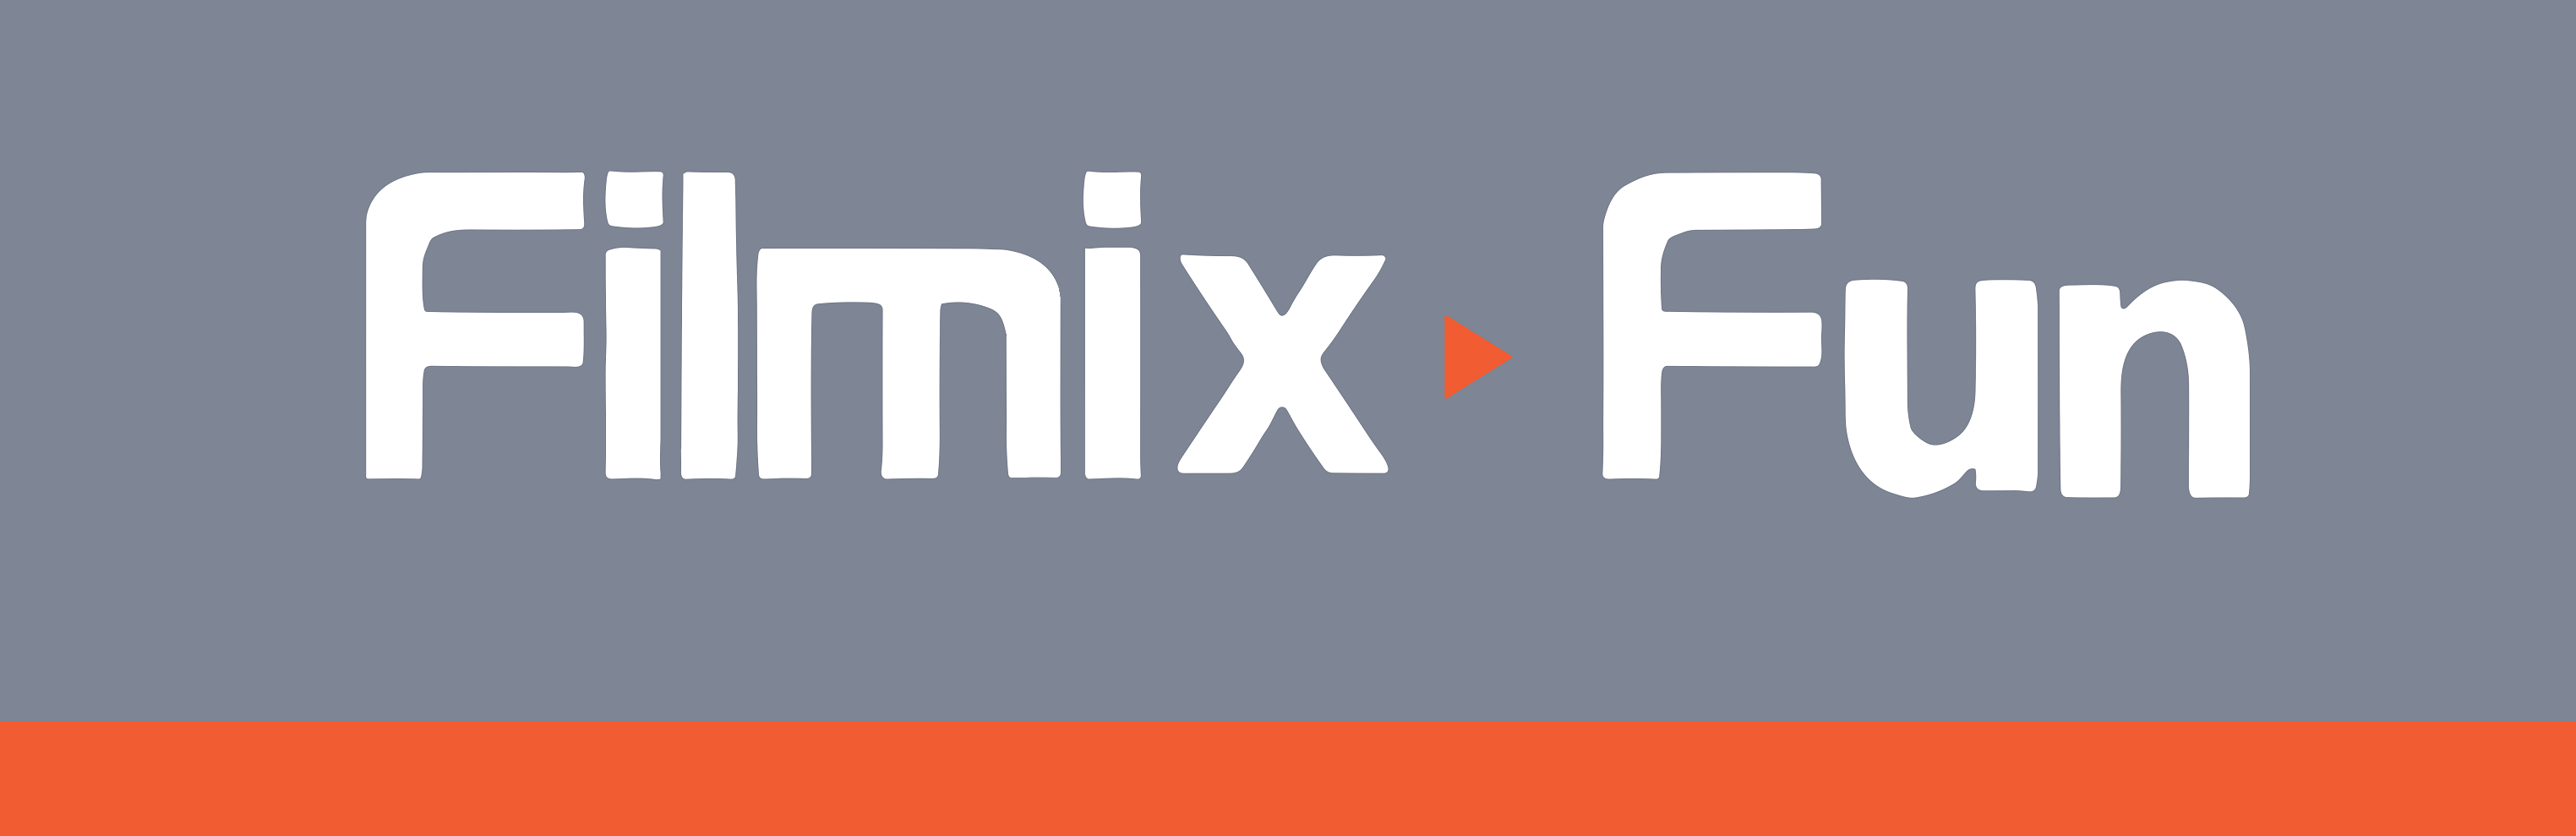 фото: Фильмикс, также известный как Filmix, является онлайн платформой, на которой пользователи могут смотреть широкий выбор фильмов и сериалов со всего мира